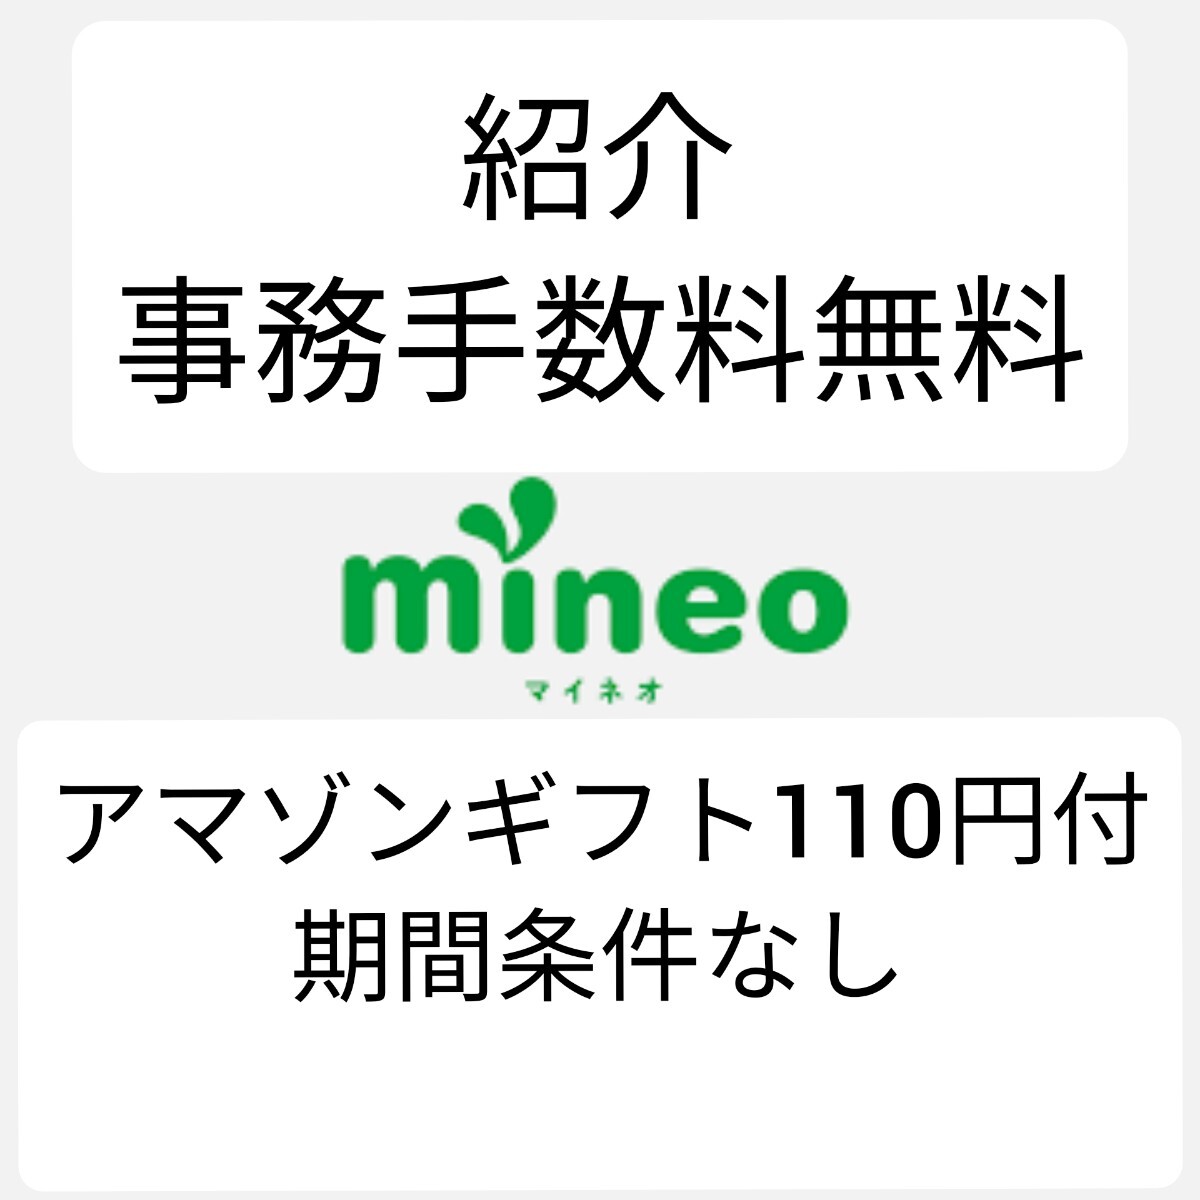  мой Neo ознакомление URL офисная работа комиссия 3300 иен бесплатный в дополнение Amazon подарок 110 иен имеется период условия нет mineo